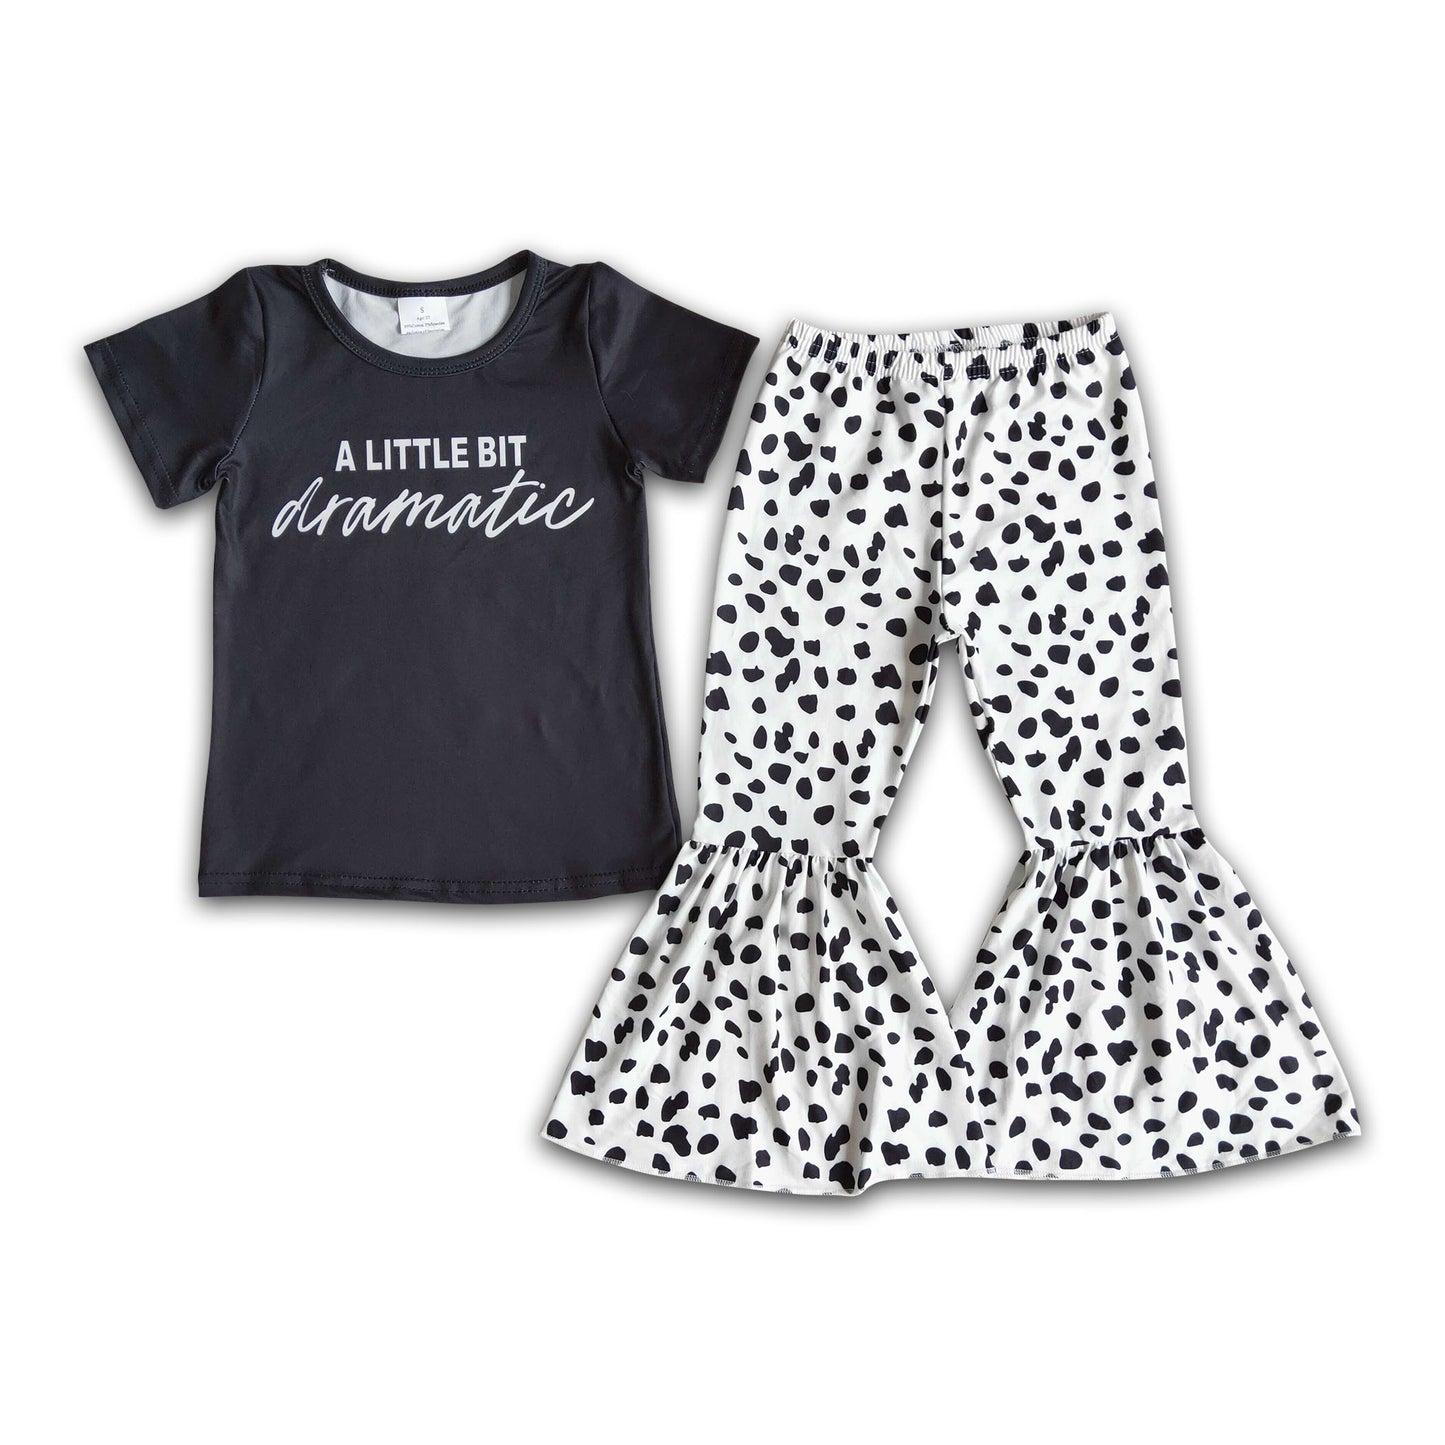 A little bit dramatic shirt leopard pants girls boutique clothes